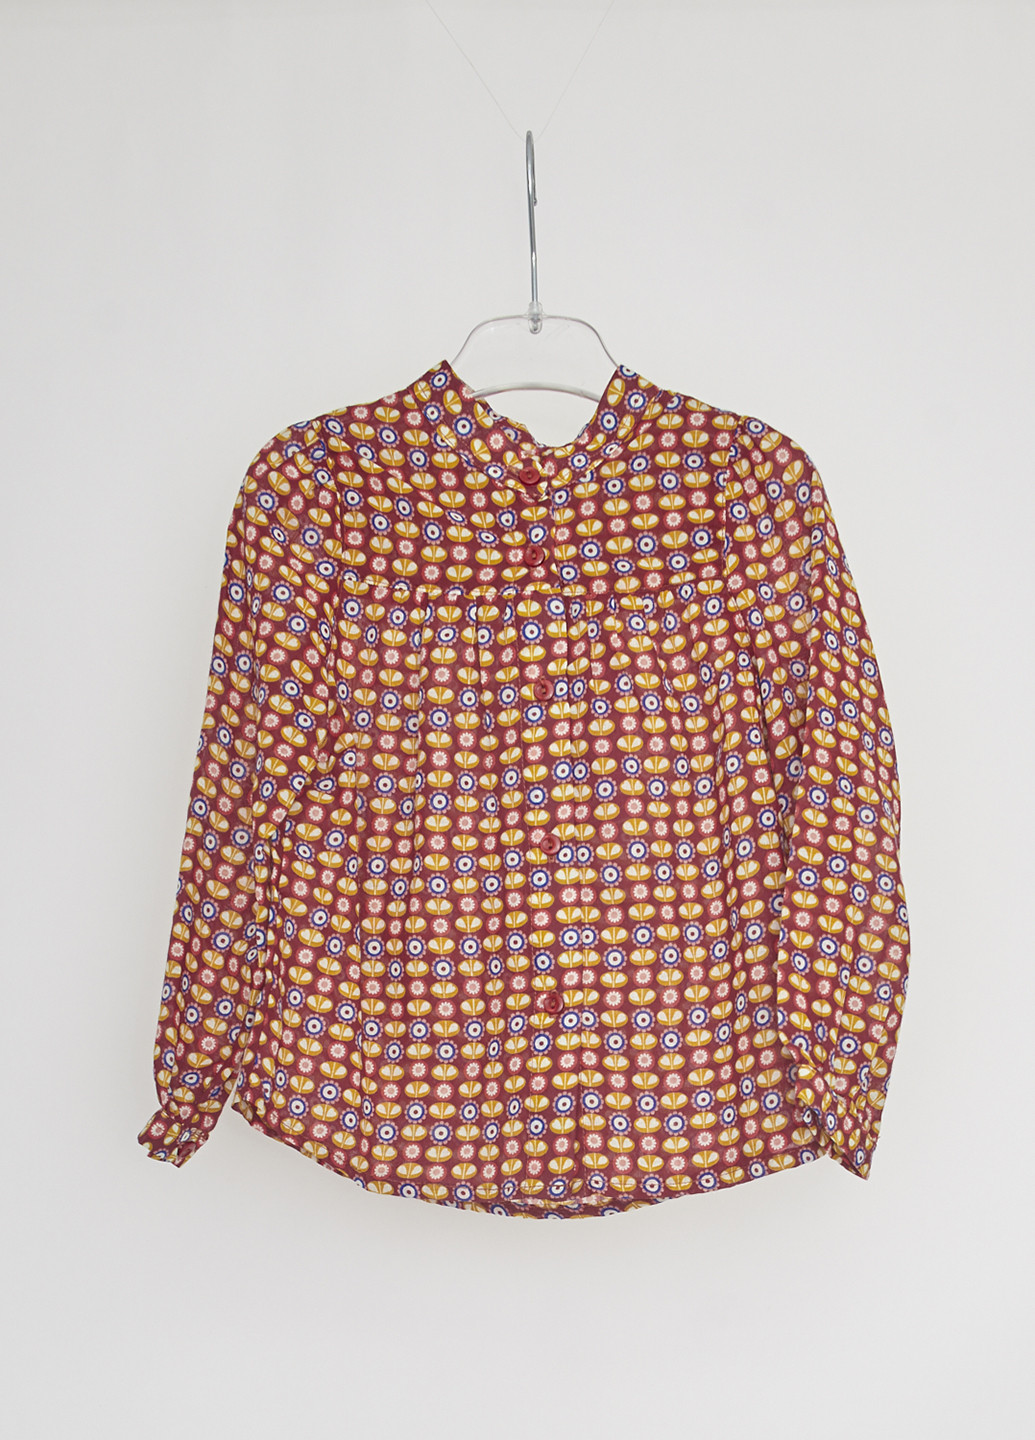 Комбинированная с геометрическим узором блузка Marasil демисезонная